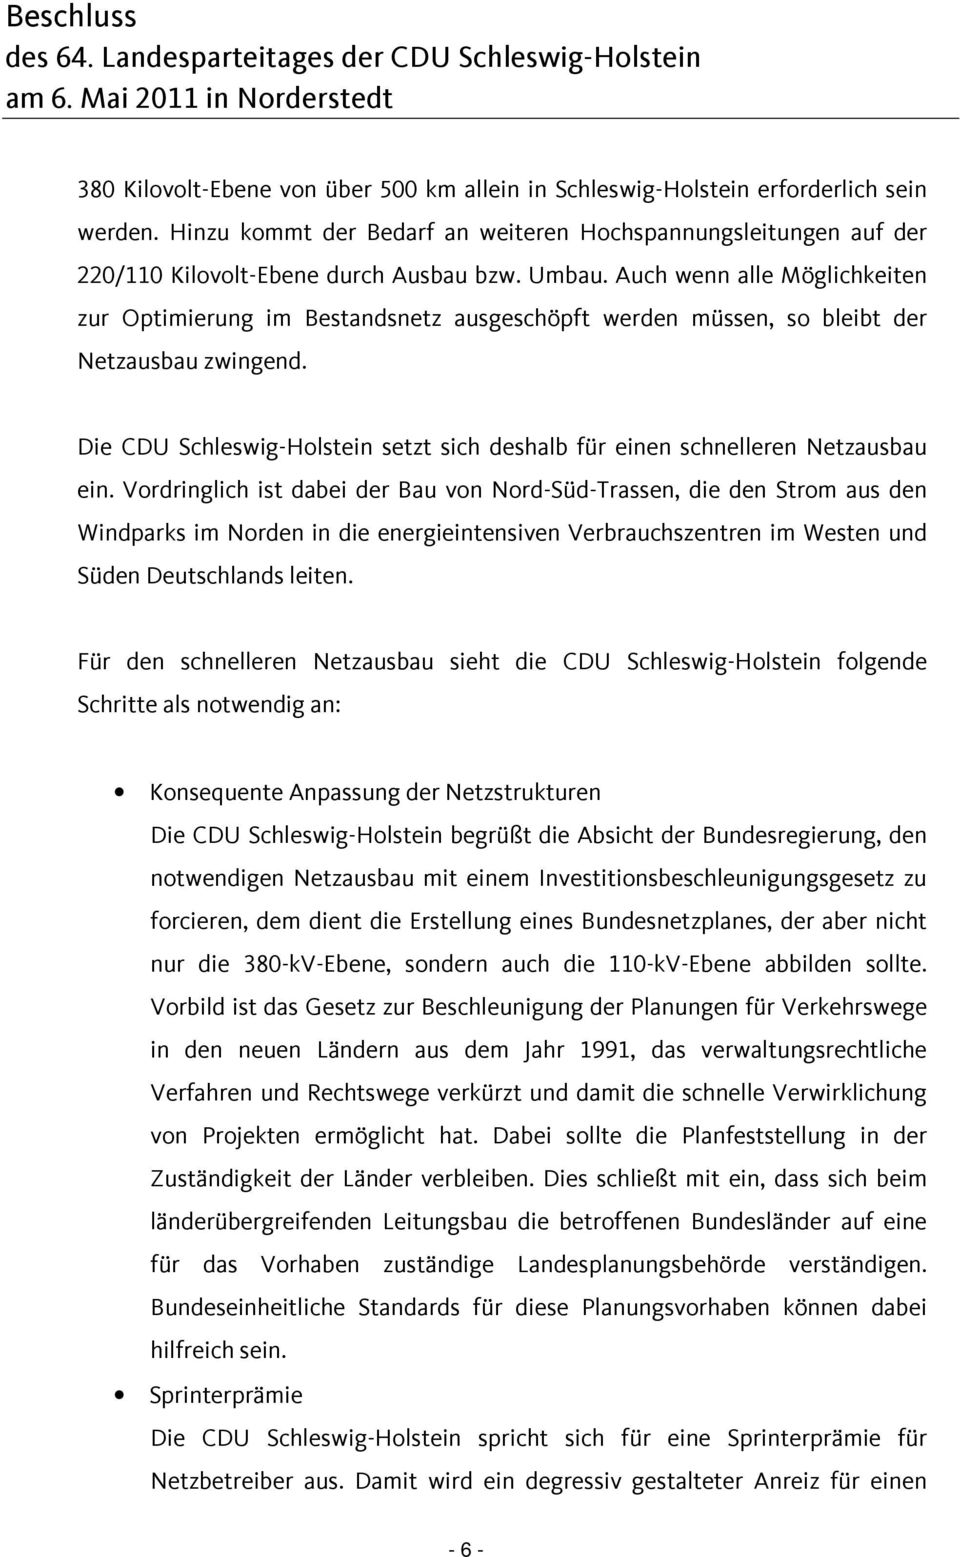 Die CDU Schleswig-Holstein setzt sich deshalb für einen schnelleren Netzausbau ein.